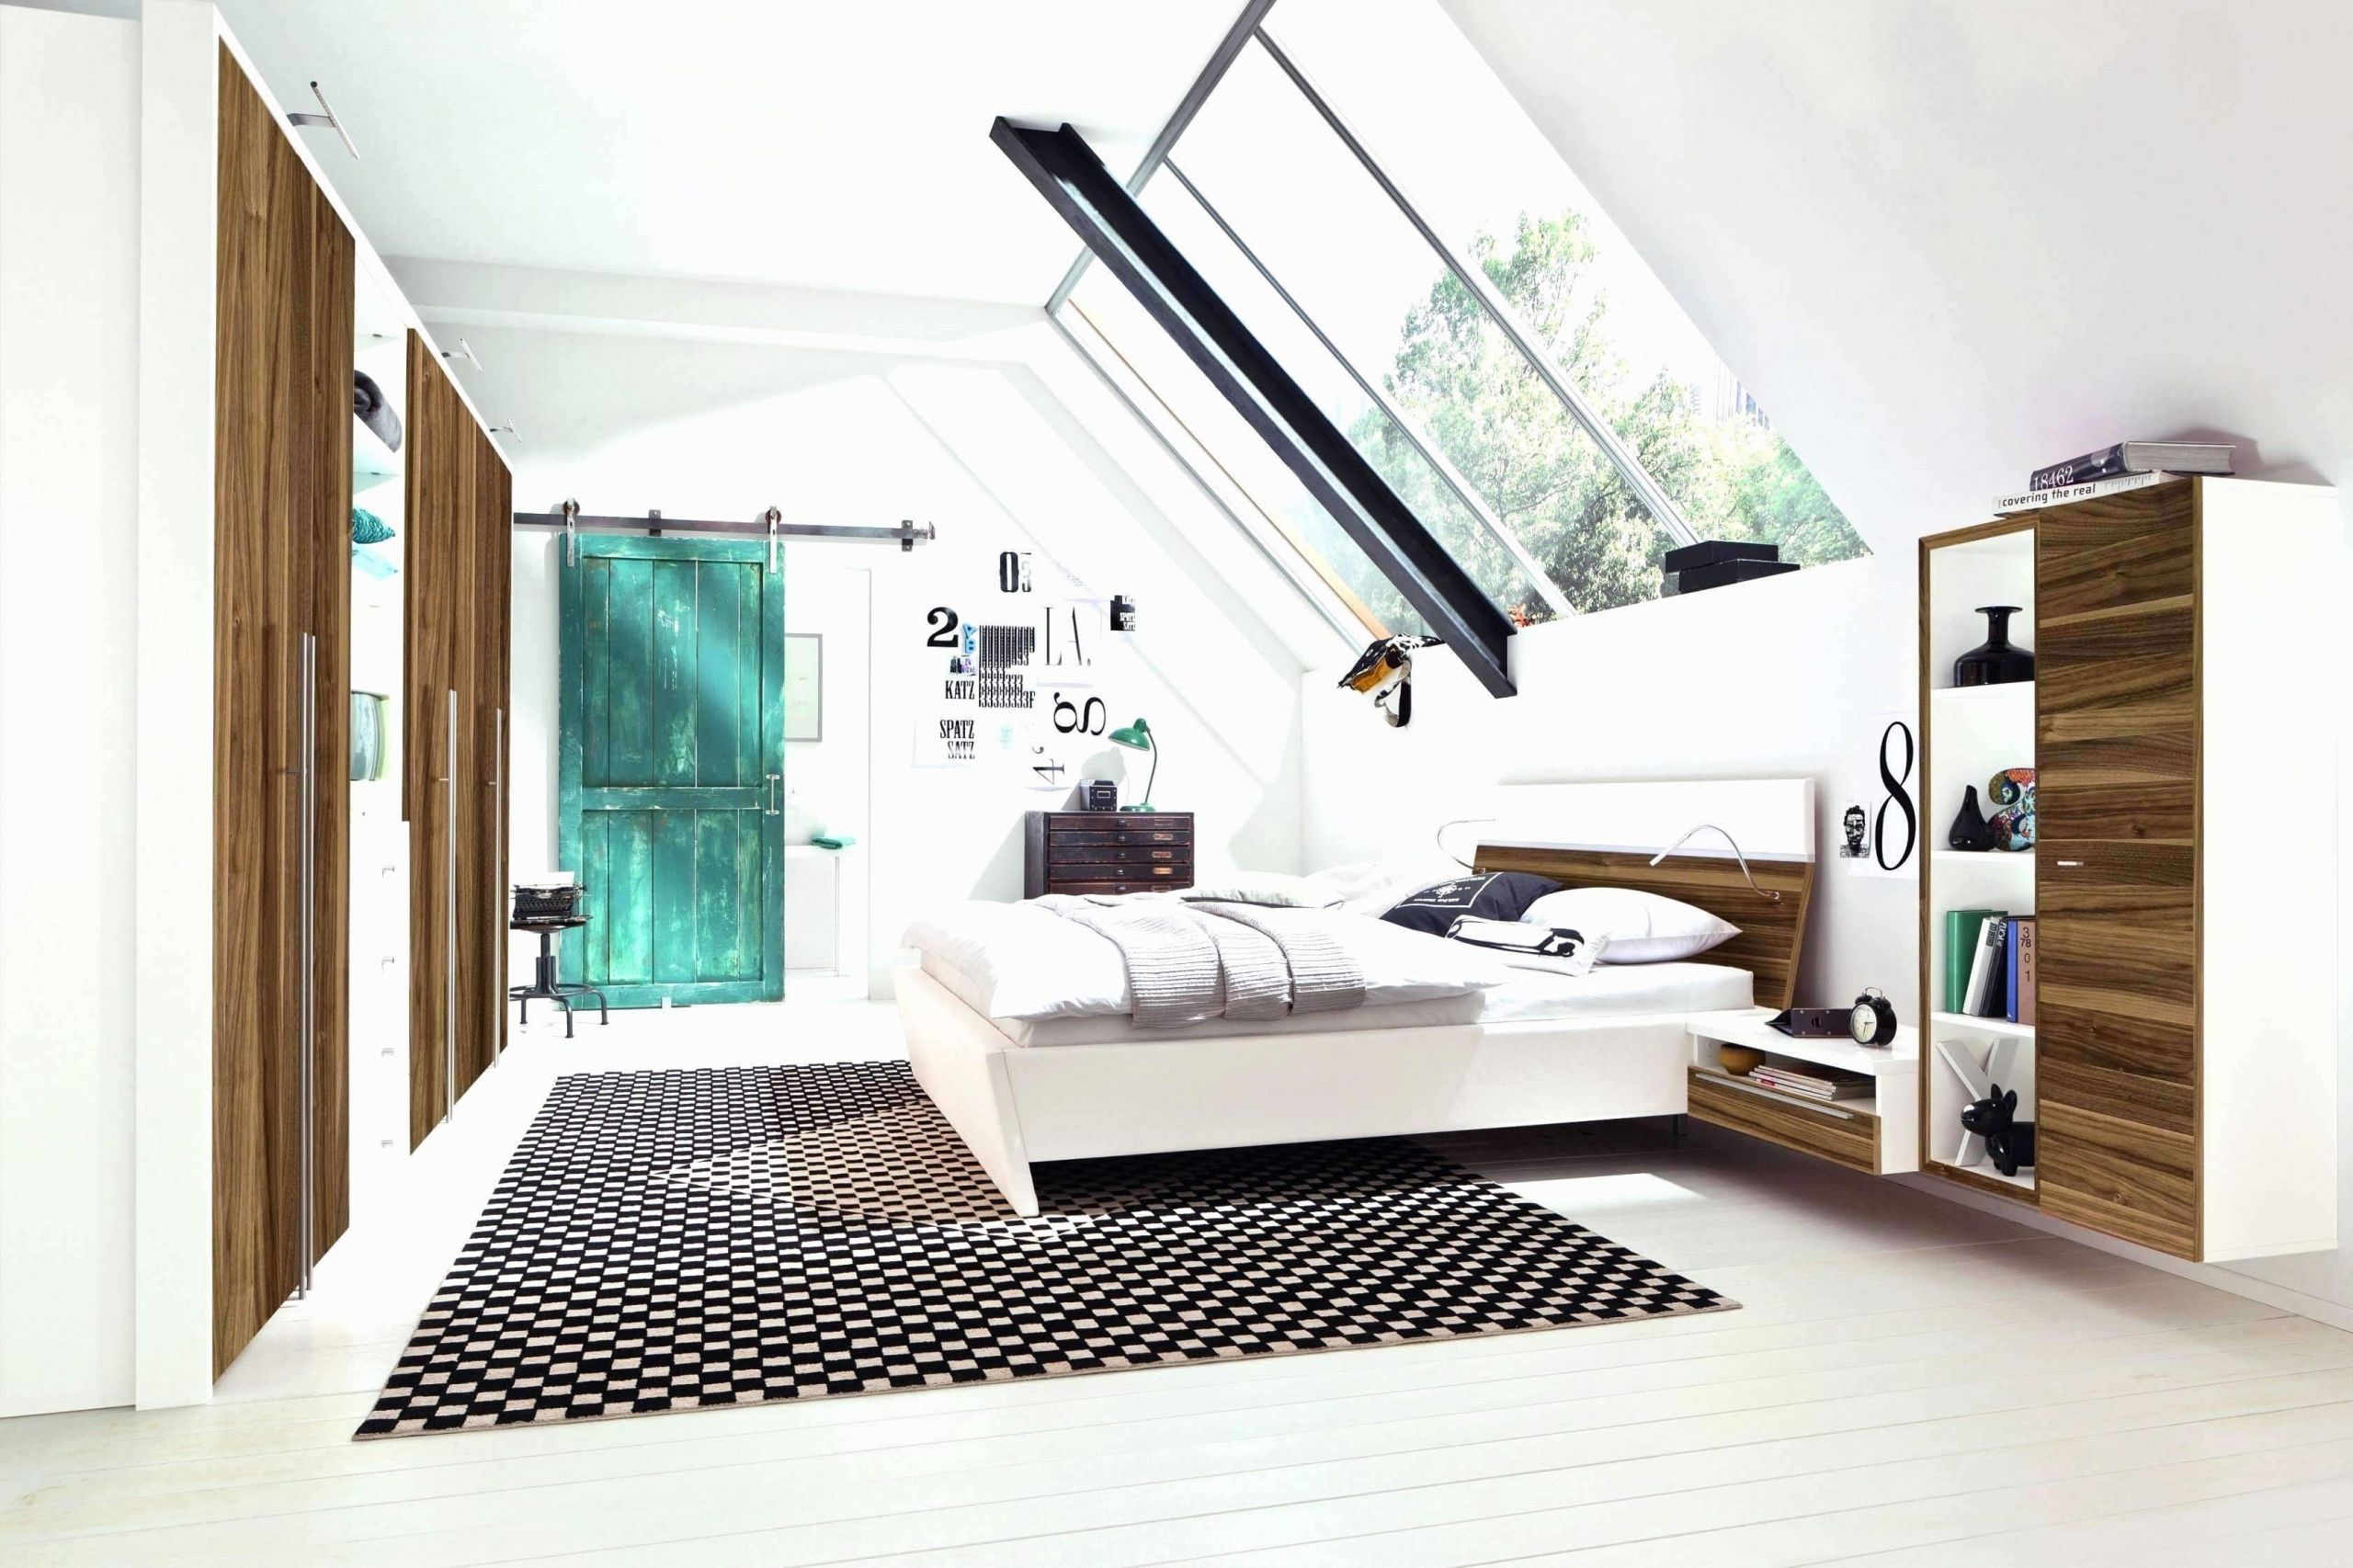 Dekoration Landhaus Best Of 29 Reizend Wohnzimmer Deko Line Shop Inspirierend